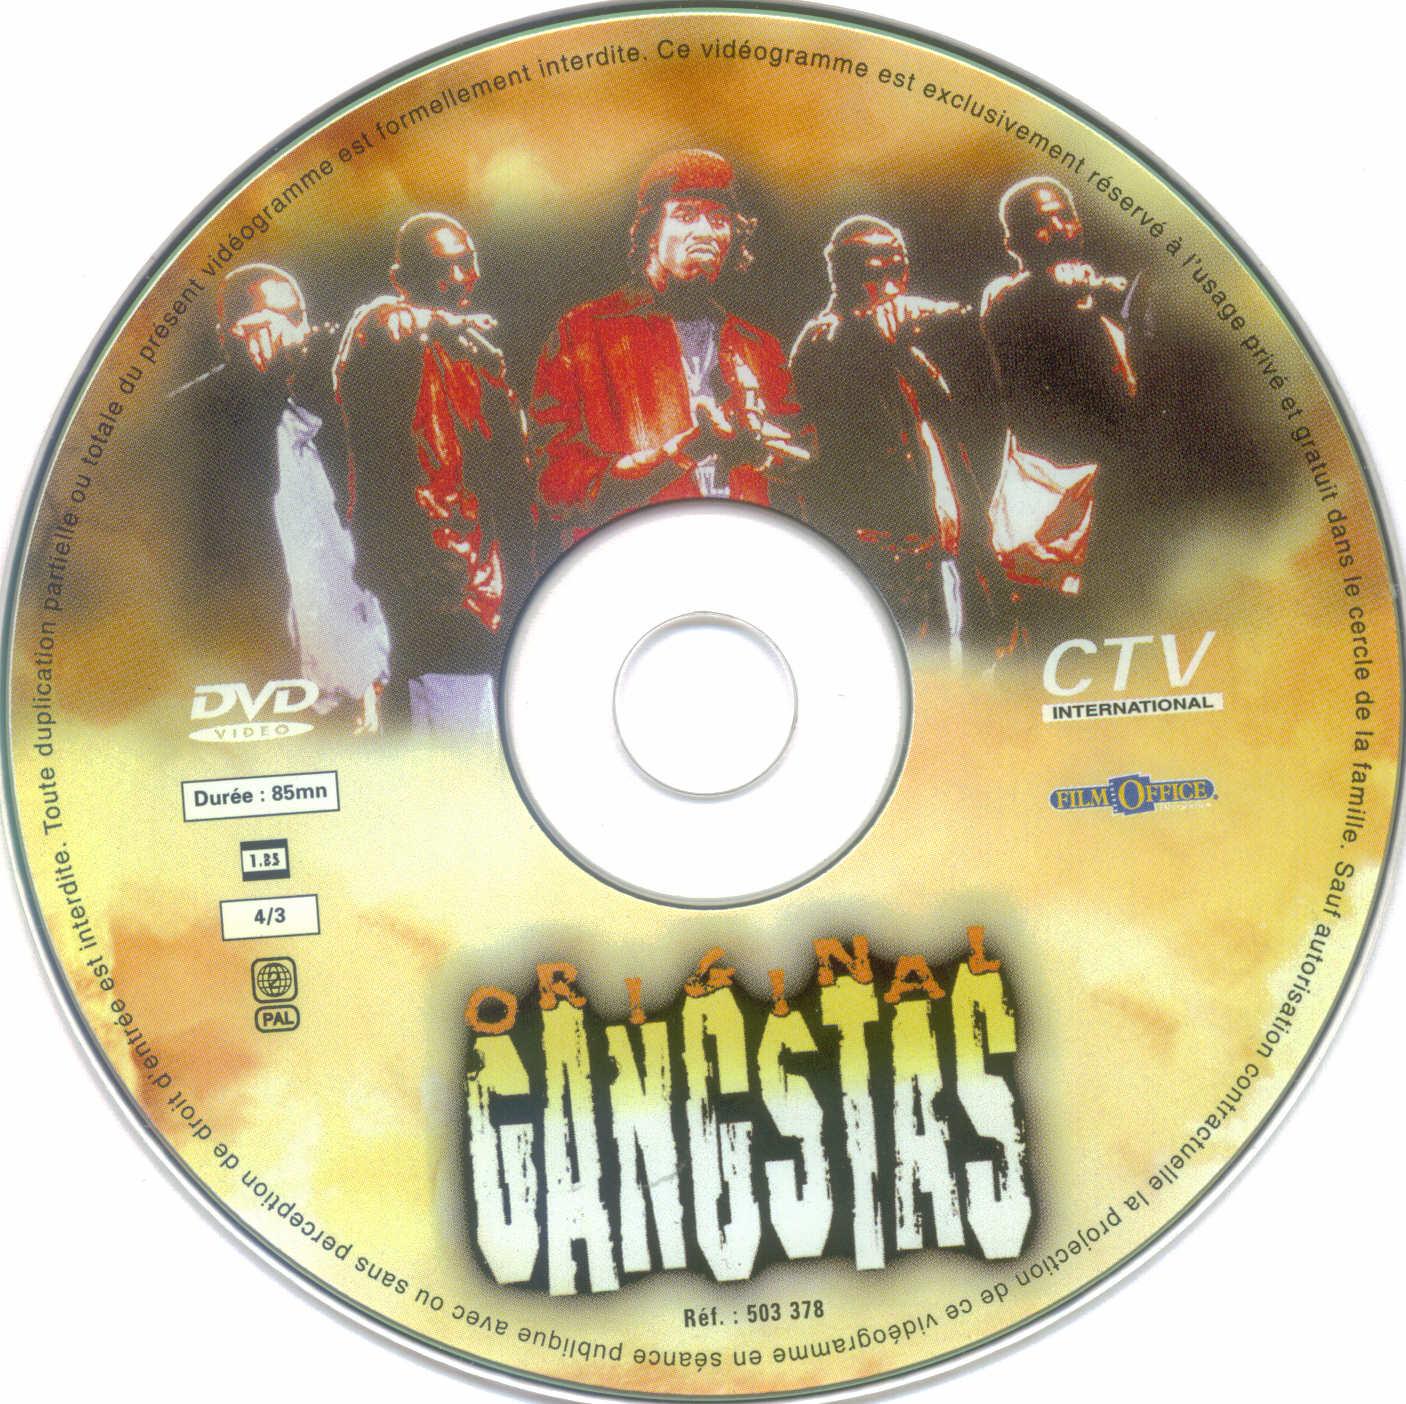 Original gangstas